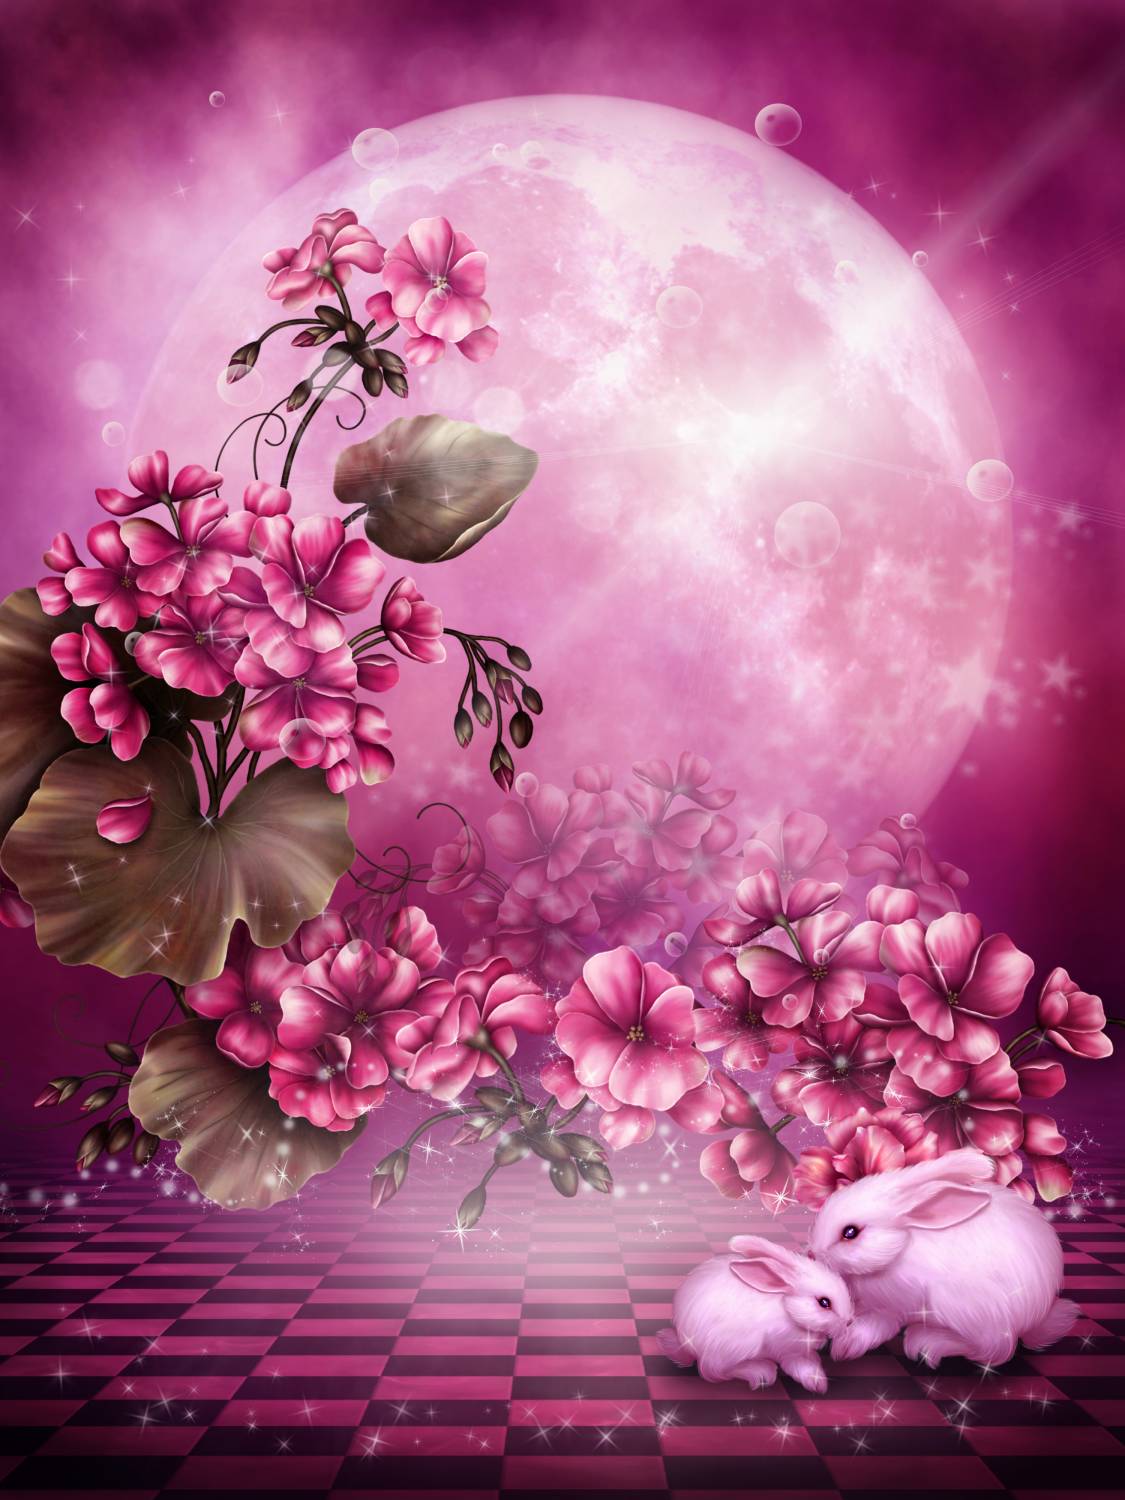 Фото Два кролика сидят на клетчатом полу возле цветов, на фоне полной луны